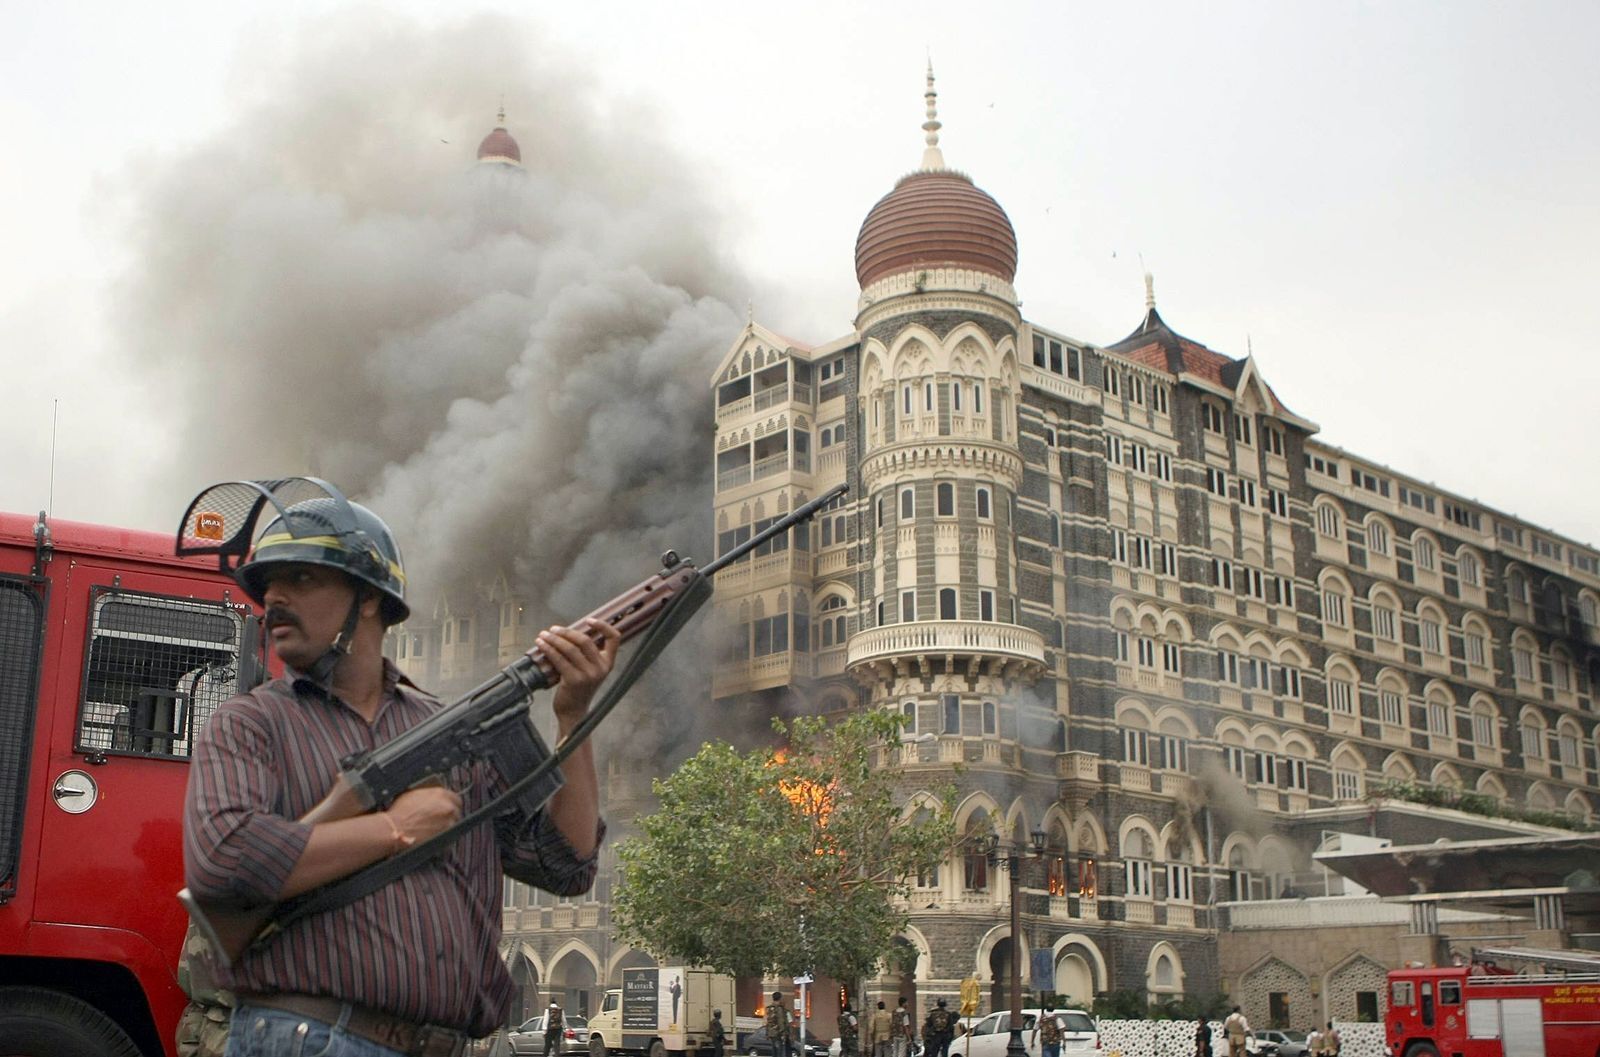 Отель в мумбаи реальные события. Мумбаи 2008 Тадж Махал теракт. Отель Мумбаи теракт 2008. Индия 2008 теракт отель Мумбаи. Отель Тадж Махал в Мумбаи теракт 2008.